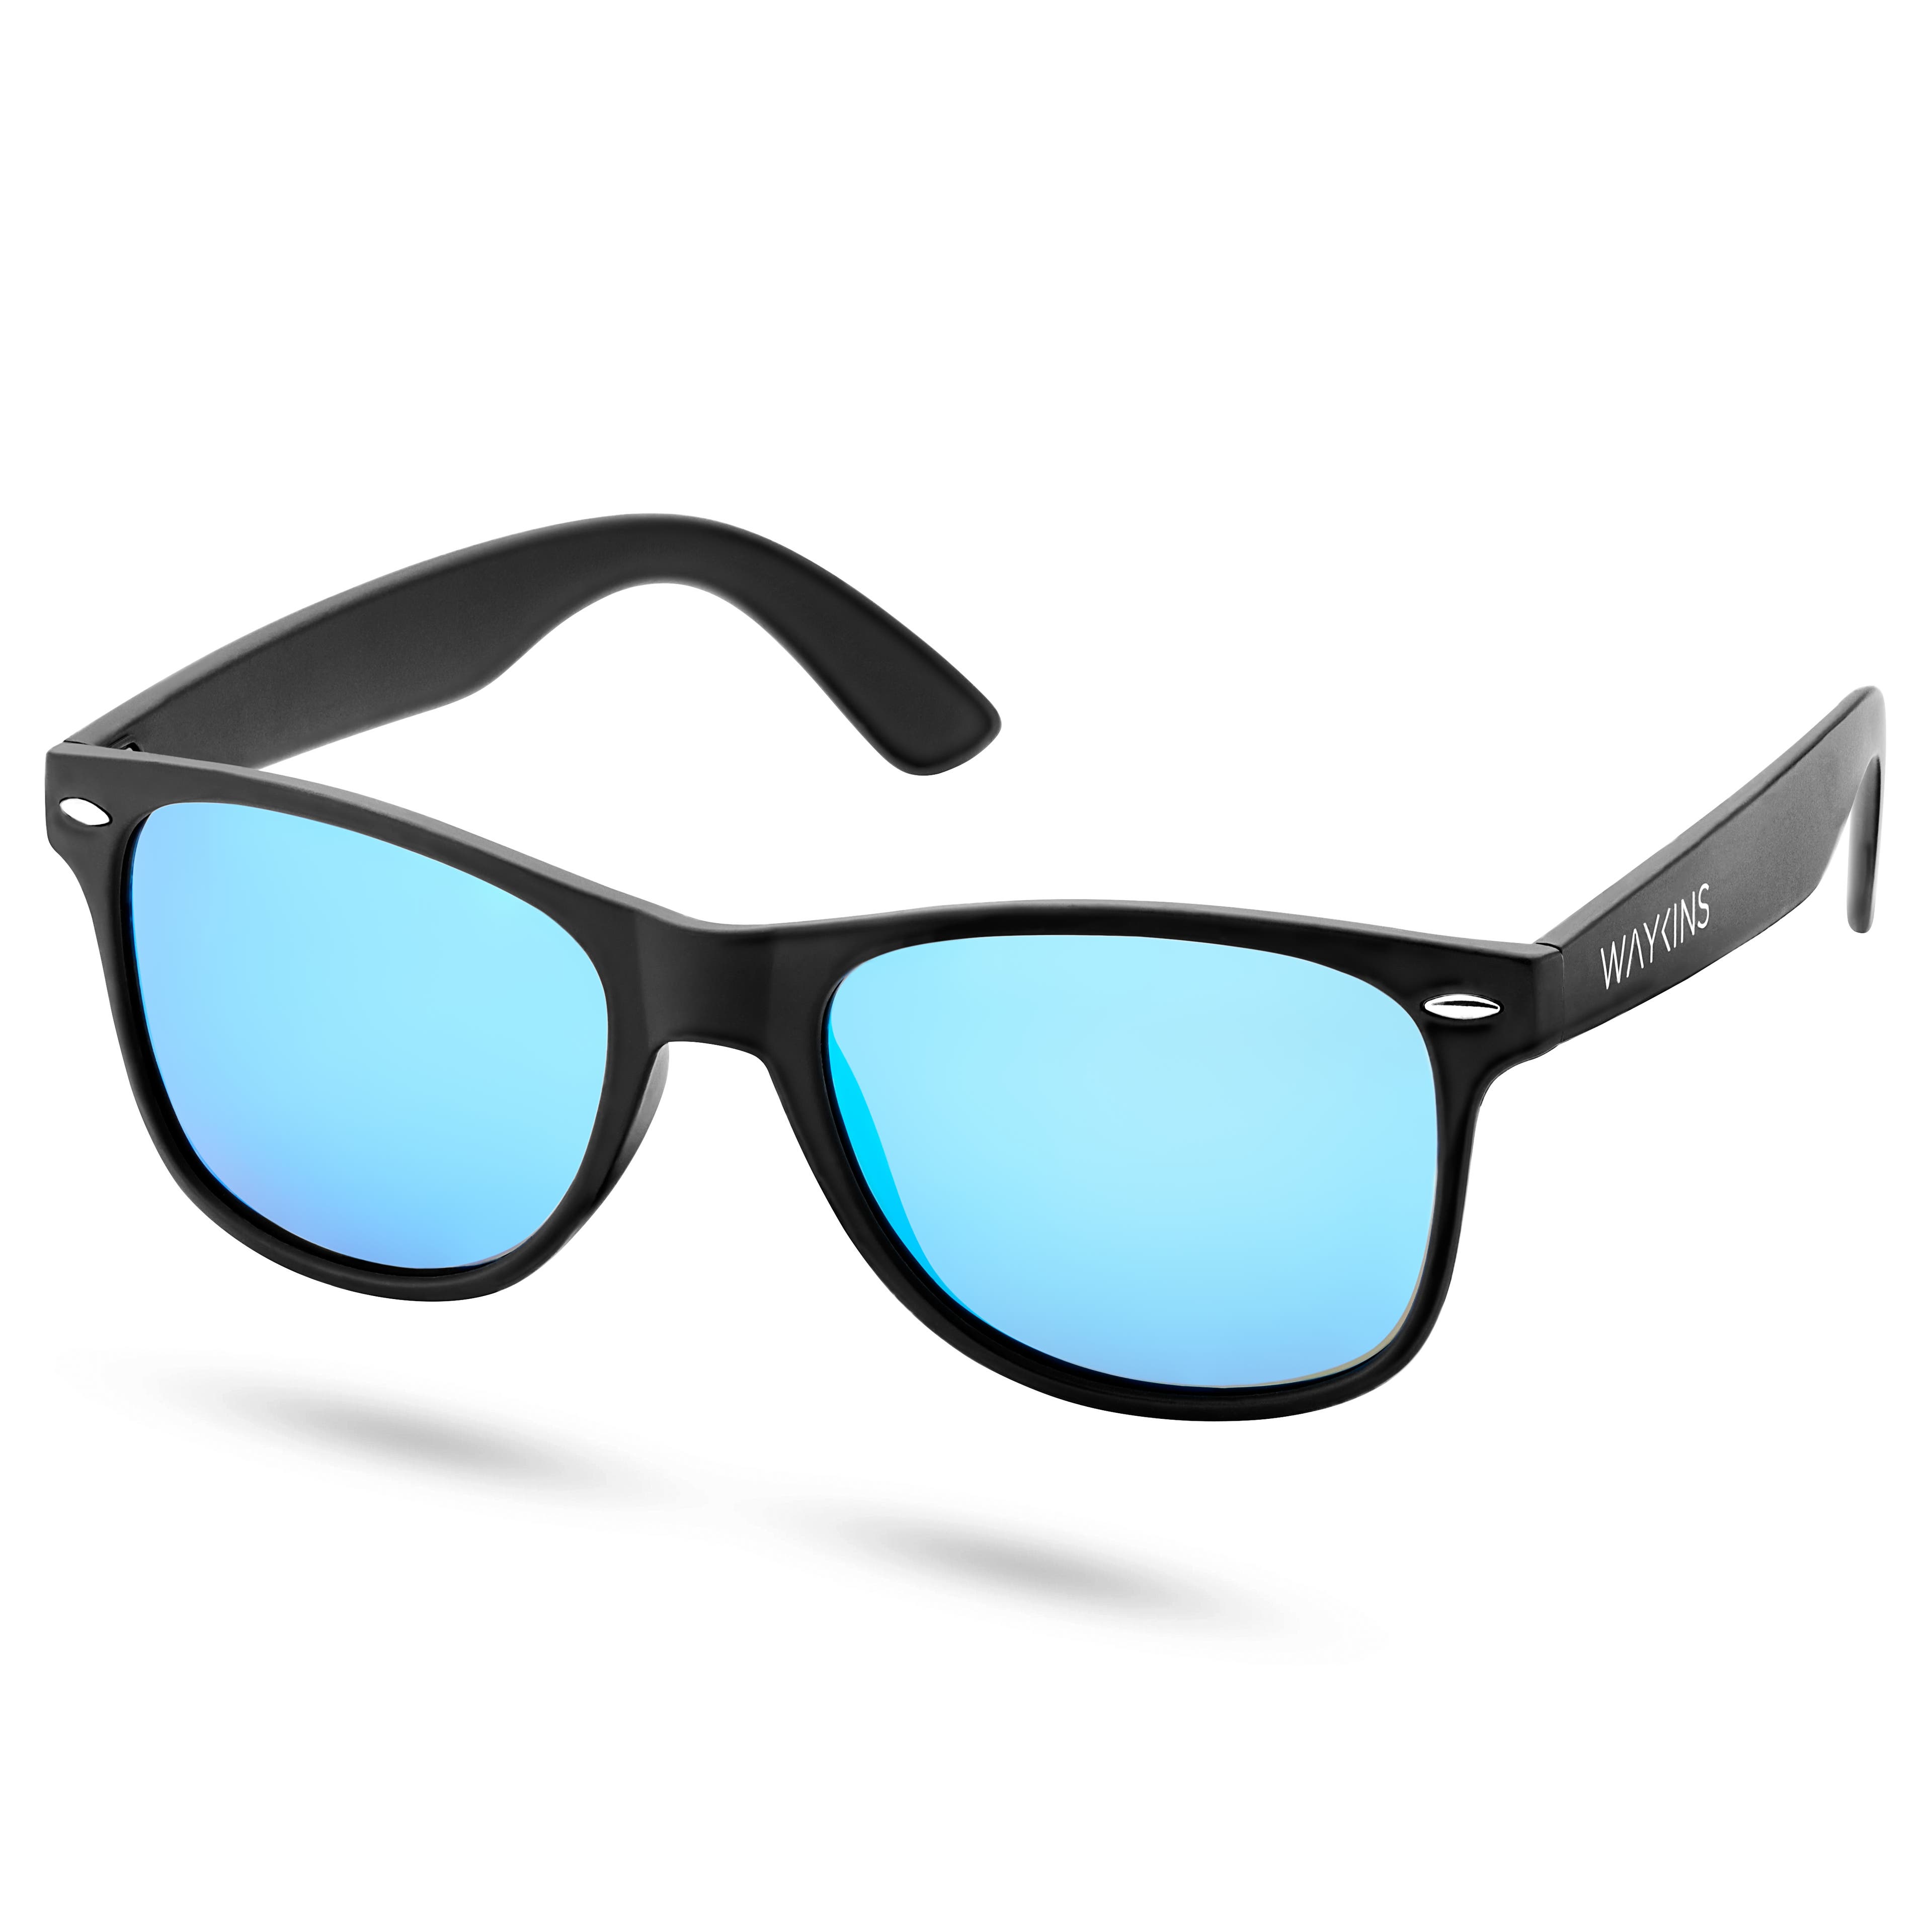 Schwarz-blaue polarisierte Retro-Sonnenbrille